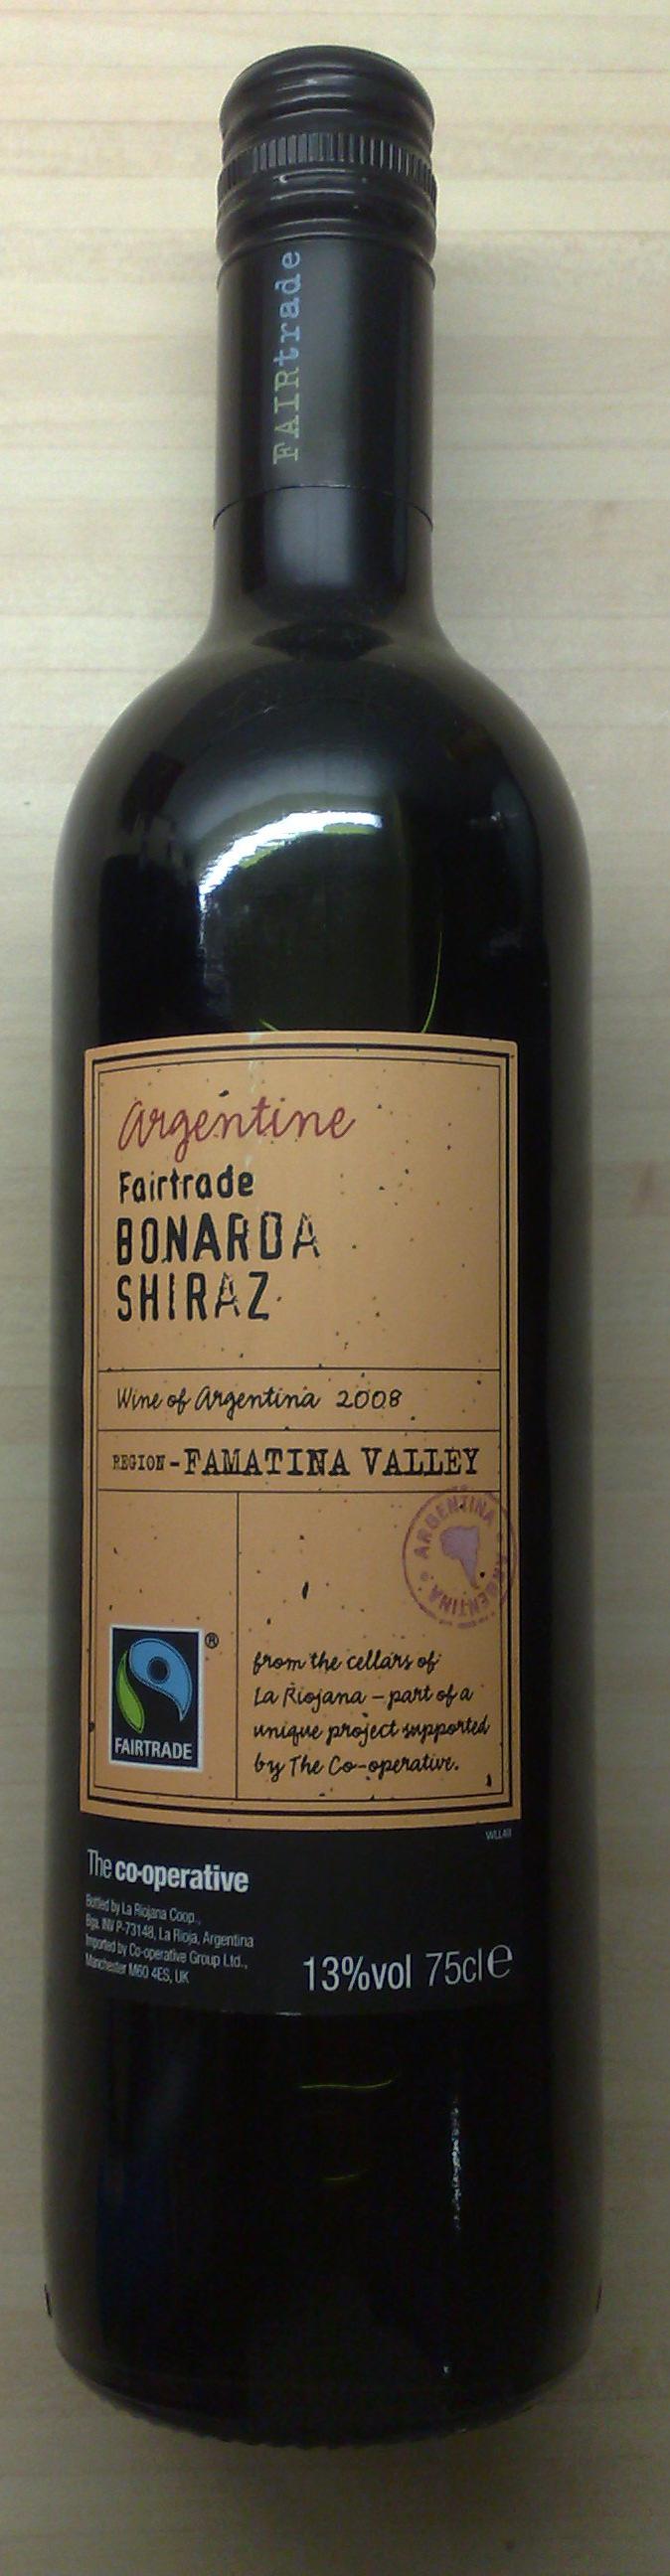 The Wines Fairtrade Shiraz, 2007, 13%, La Riojana, Famatina Valley,